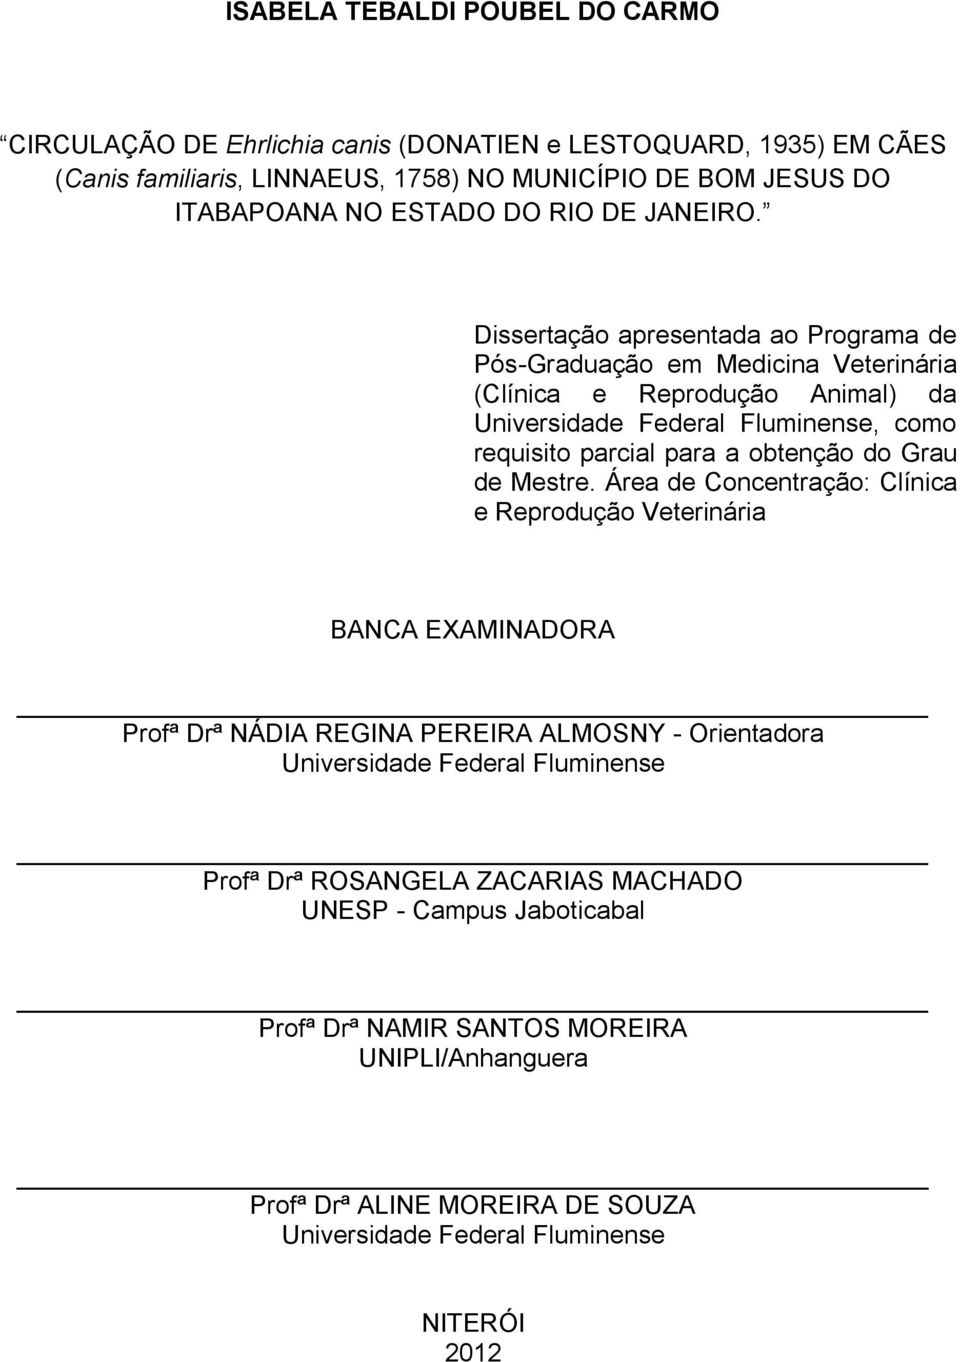 Dissertação apresentada ao Programa de Pós-Graduação em Medicina Veterinária (Clínica e Reprodução Animal) da Universidade Federal Fluminense, como requisito parcial para a obtenção do